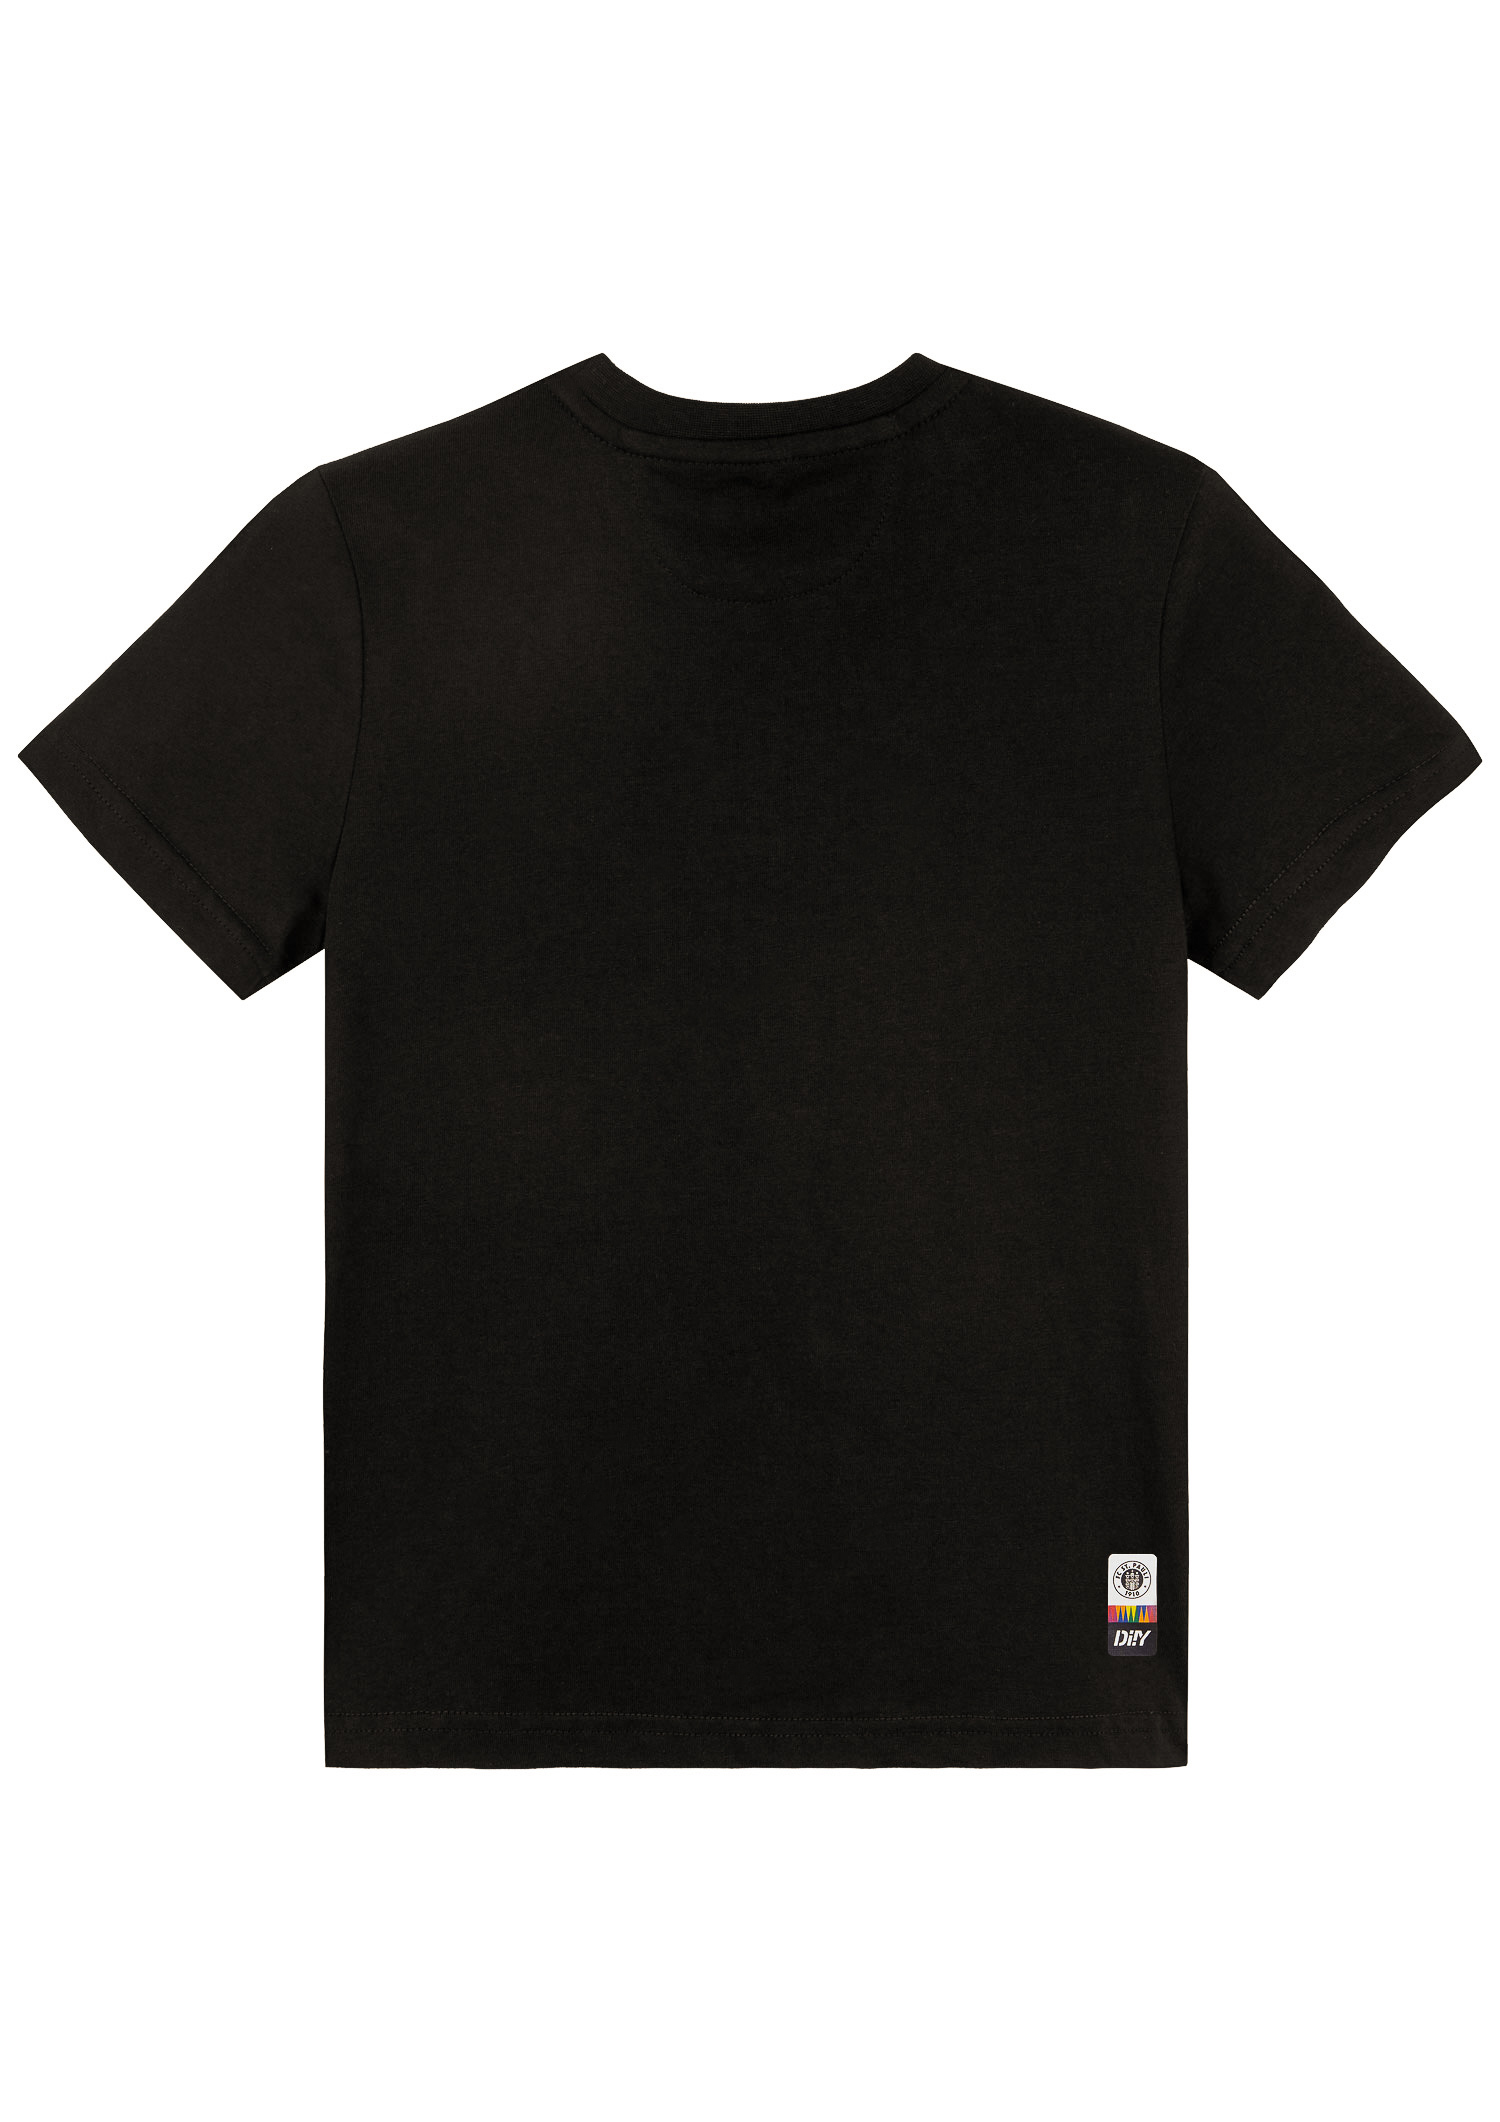 DIIY - Kinder Logo T-Shirt 2023-24